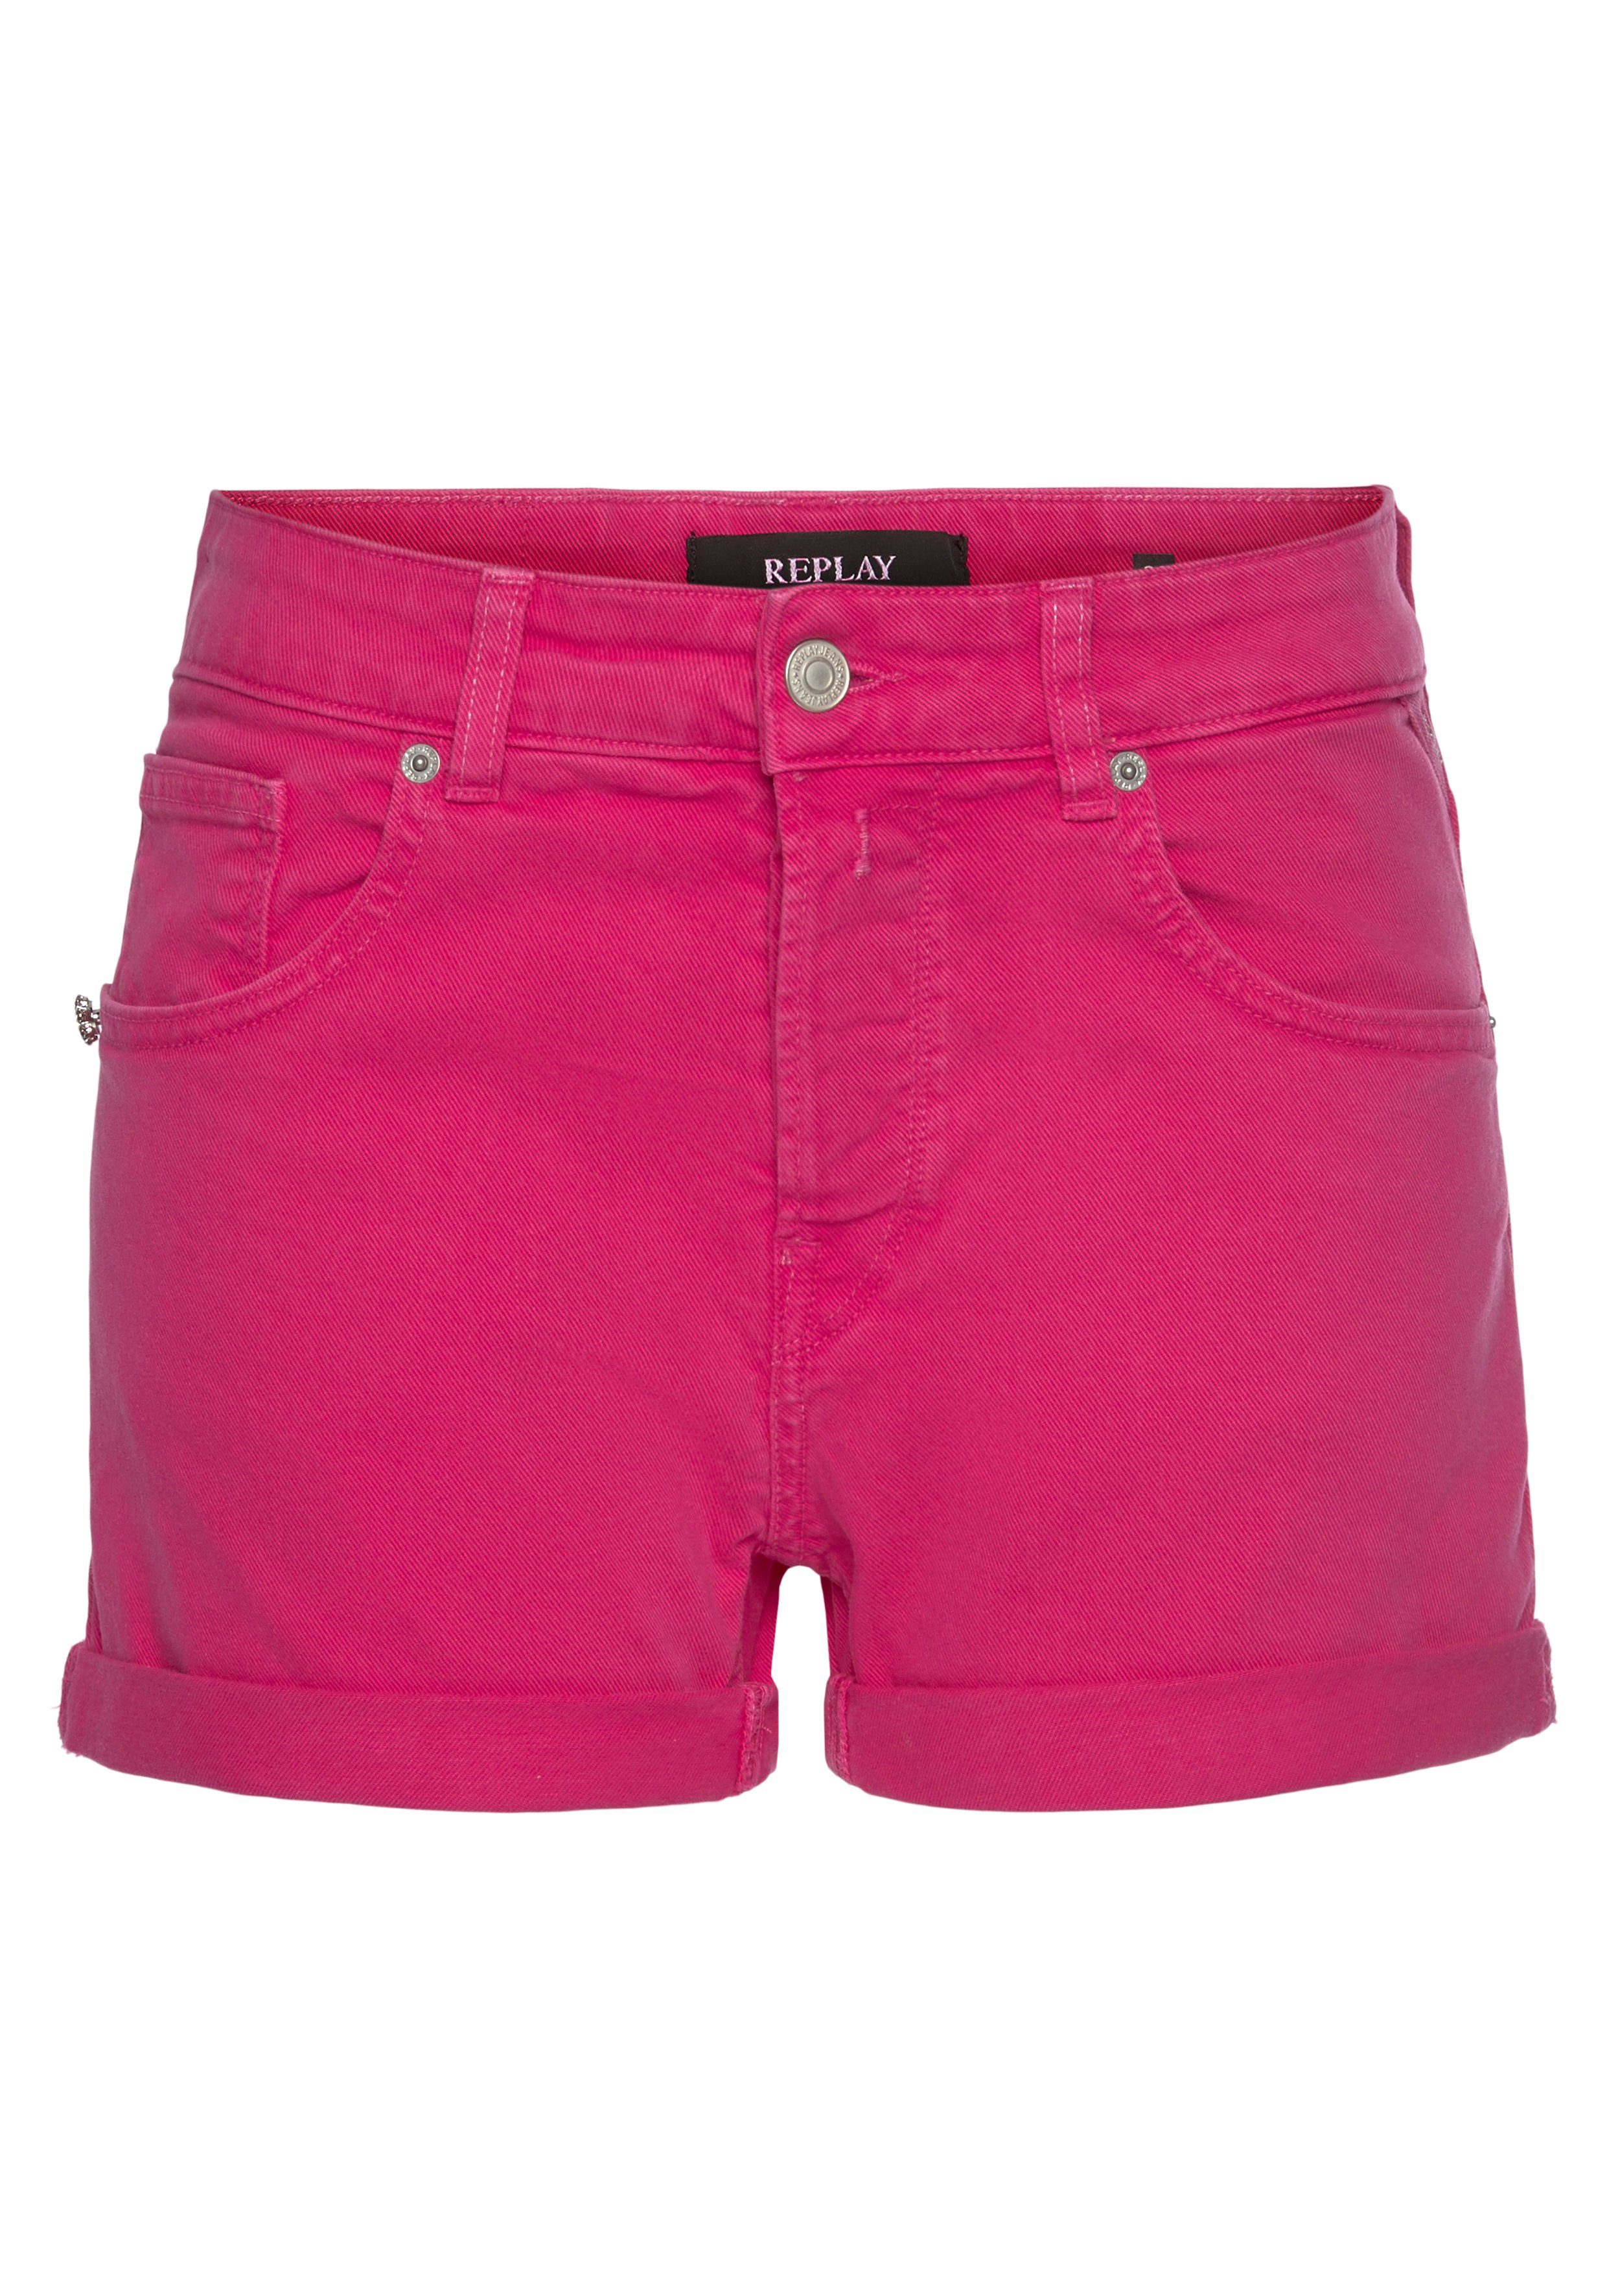 Replay Shorts Damen online kaufen | OTTO